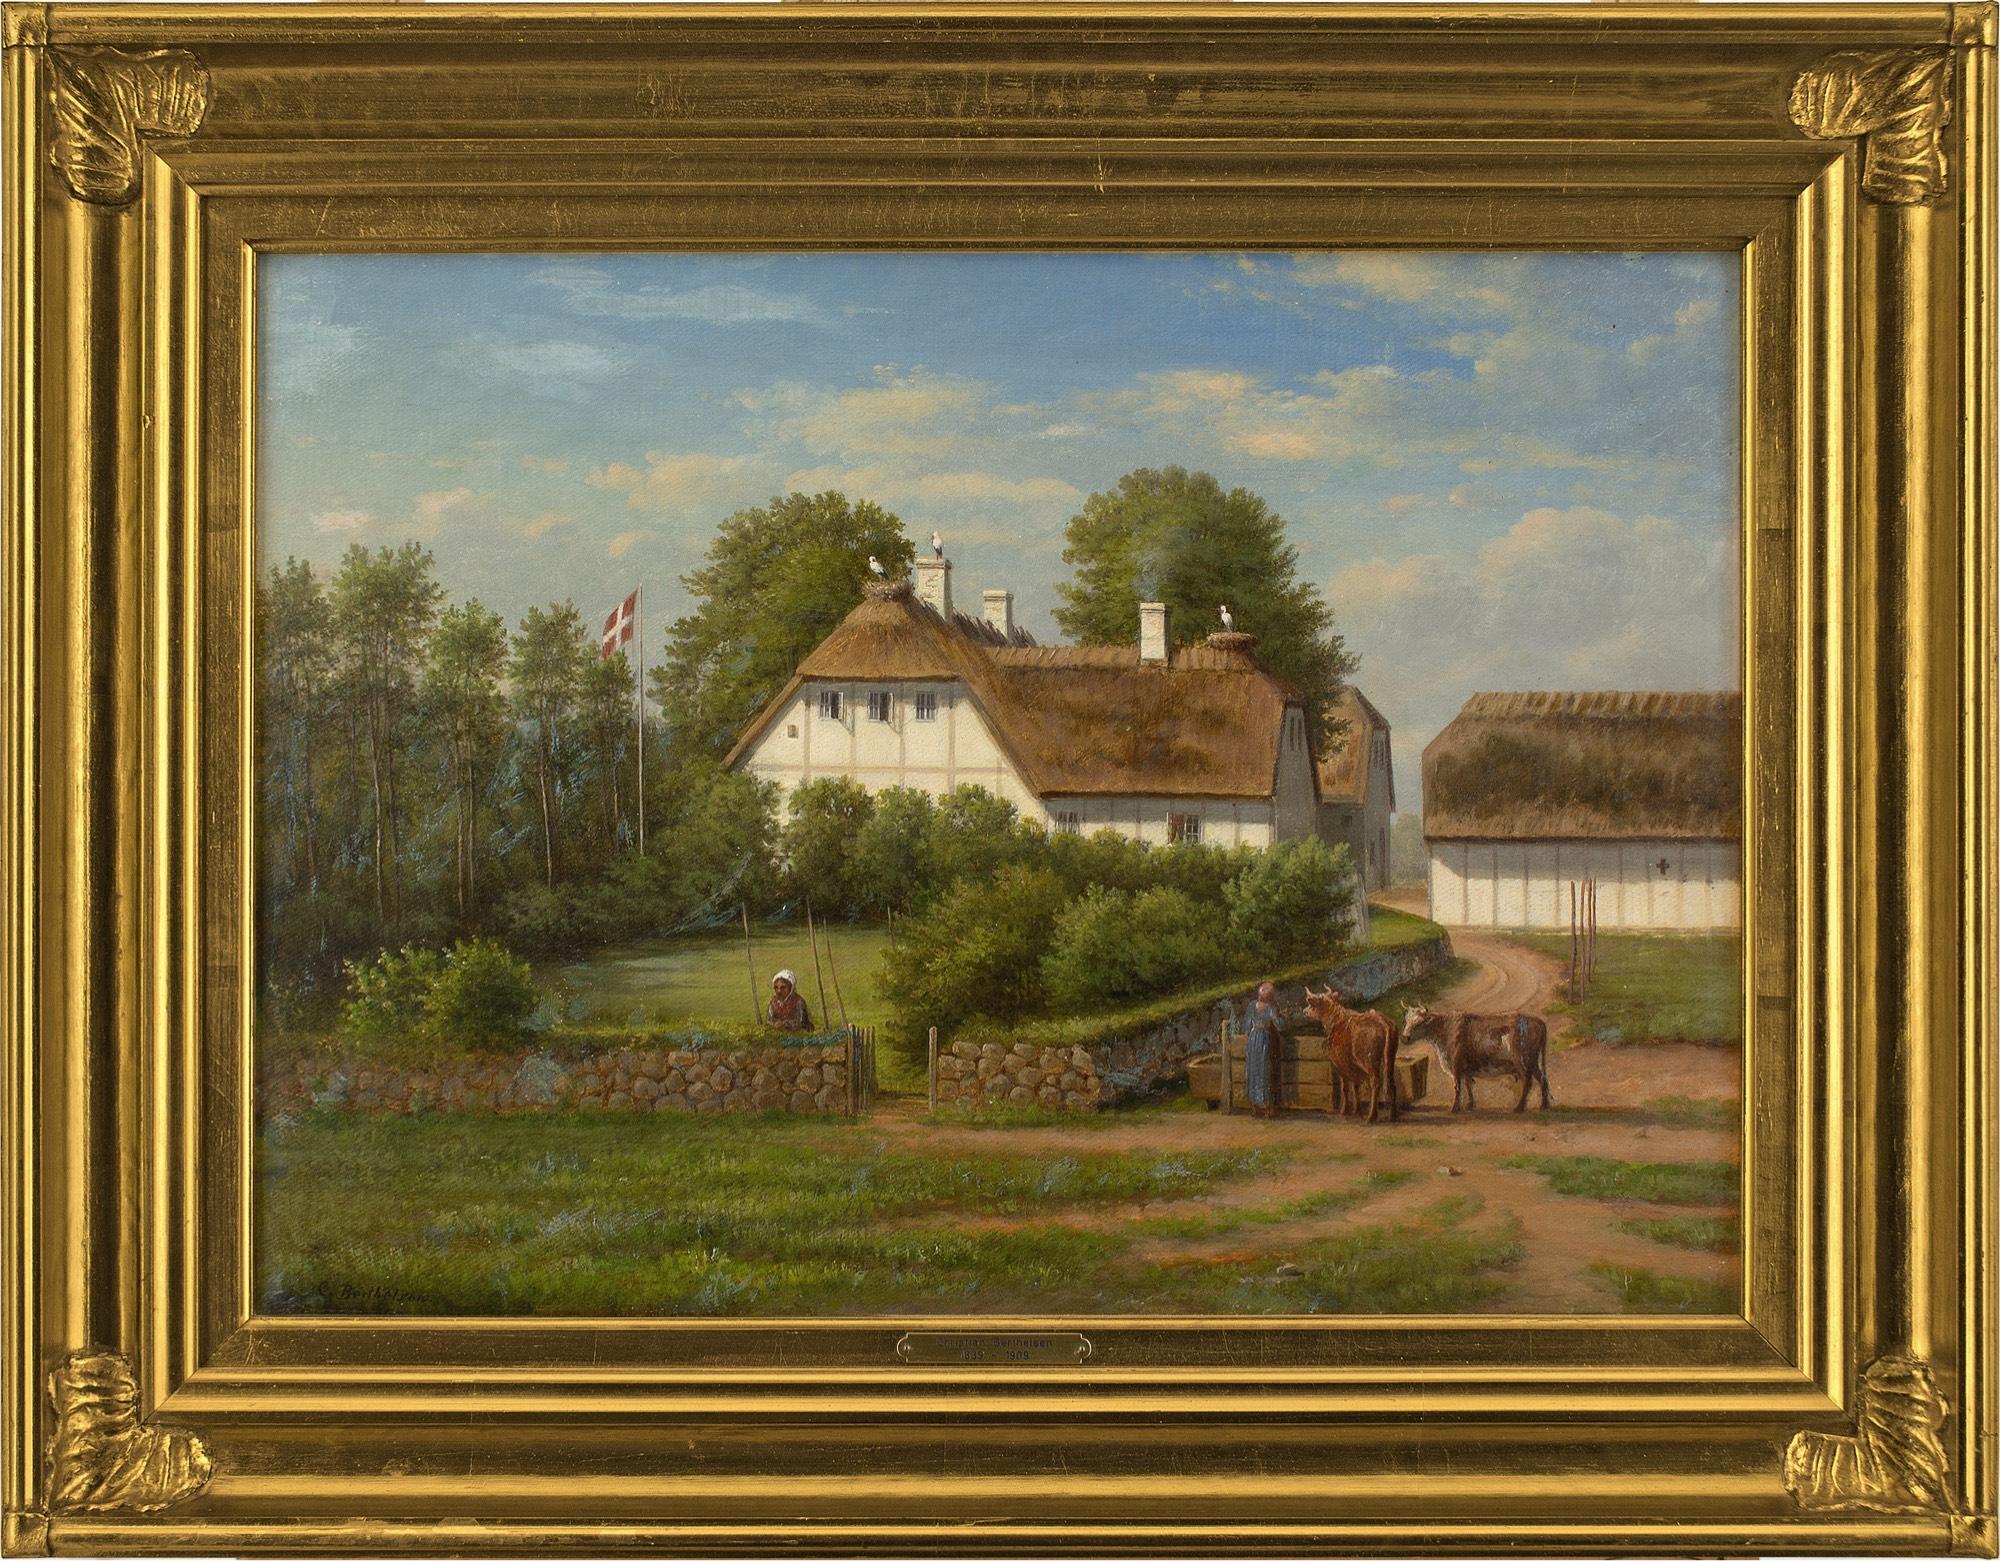 Dieses charmante Ölgemälde des dänischen Künstlers Christian Berthelsen (1839-1909) aus dem 19. Jahrhundert zeigt eine Dorfszene mit Störchen, die auf einem Fachwerkhaus nisten. Ist es einfach eine sanfte Darstellung des idyllischen Familienlebens?